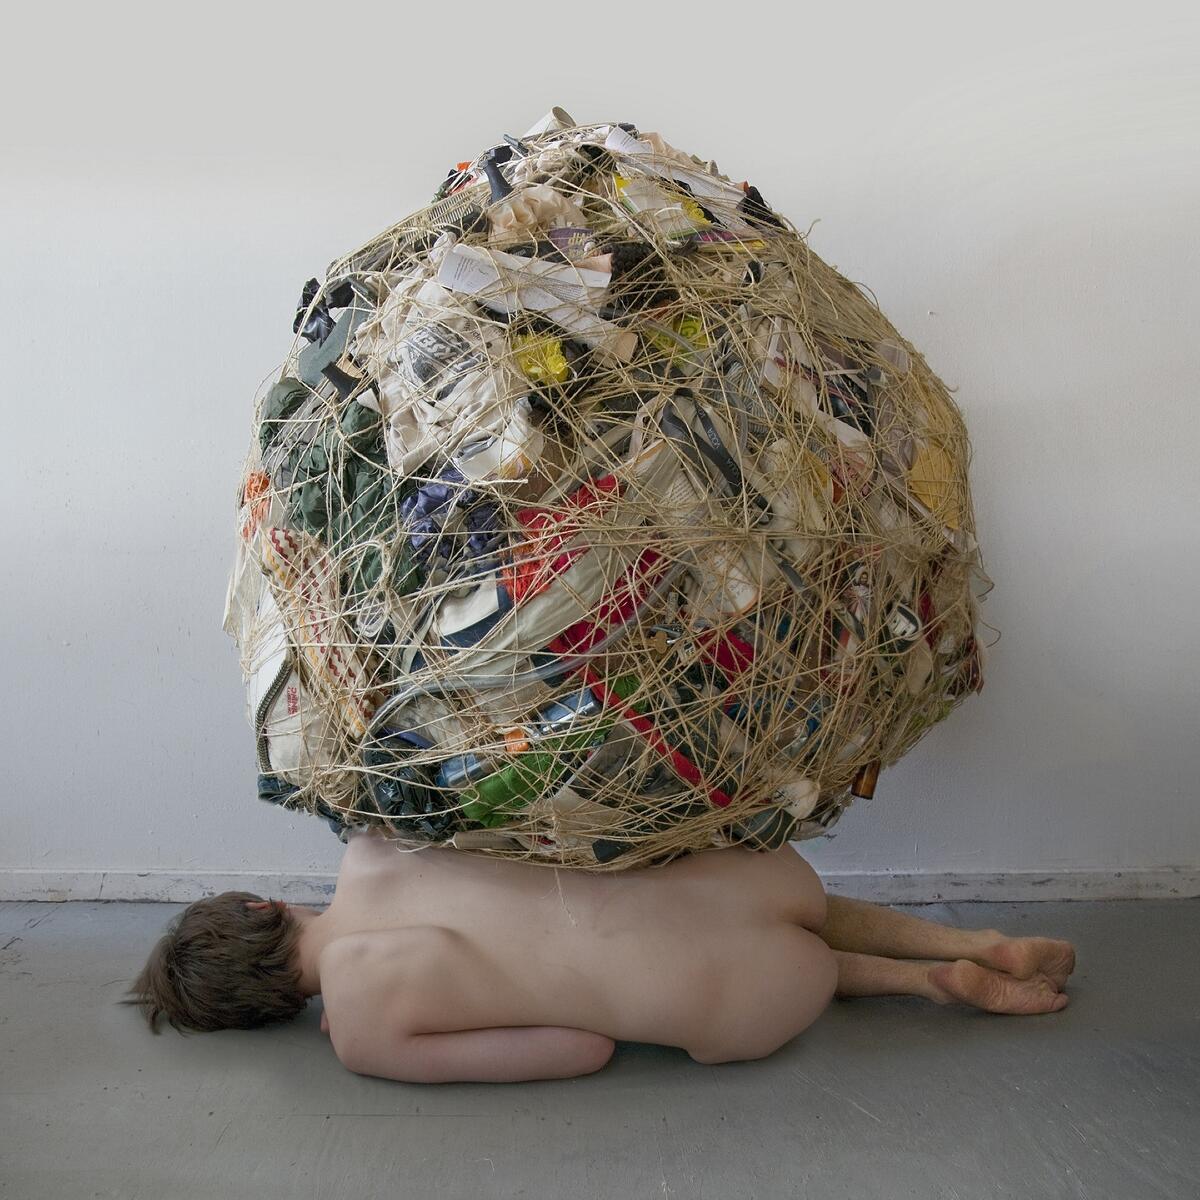 Bild vergrößern: Fotografie von Mary Mattingly mit einer liegenden, unbekleideten Person, deren Besitz in einem geschnürten Bündel auf ihr liegt.